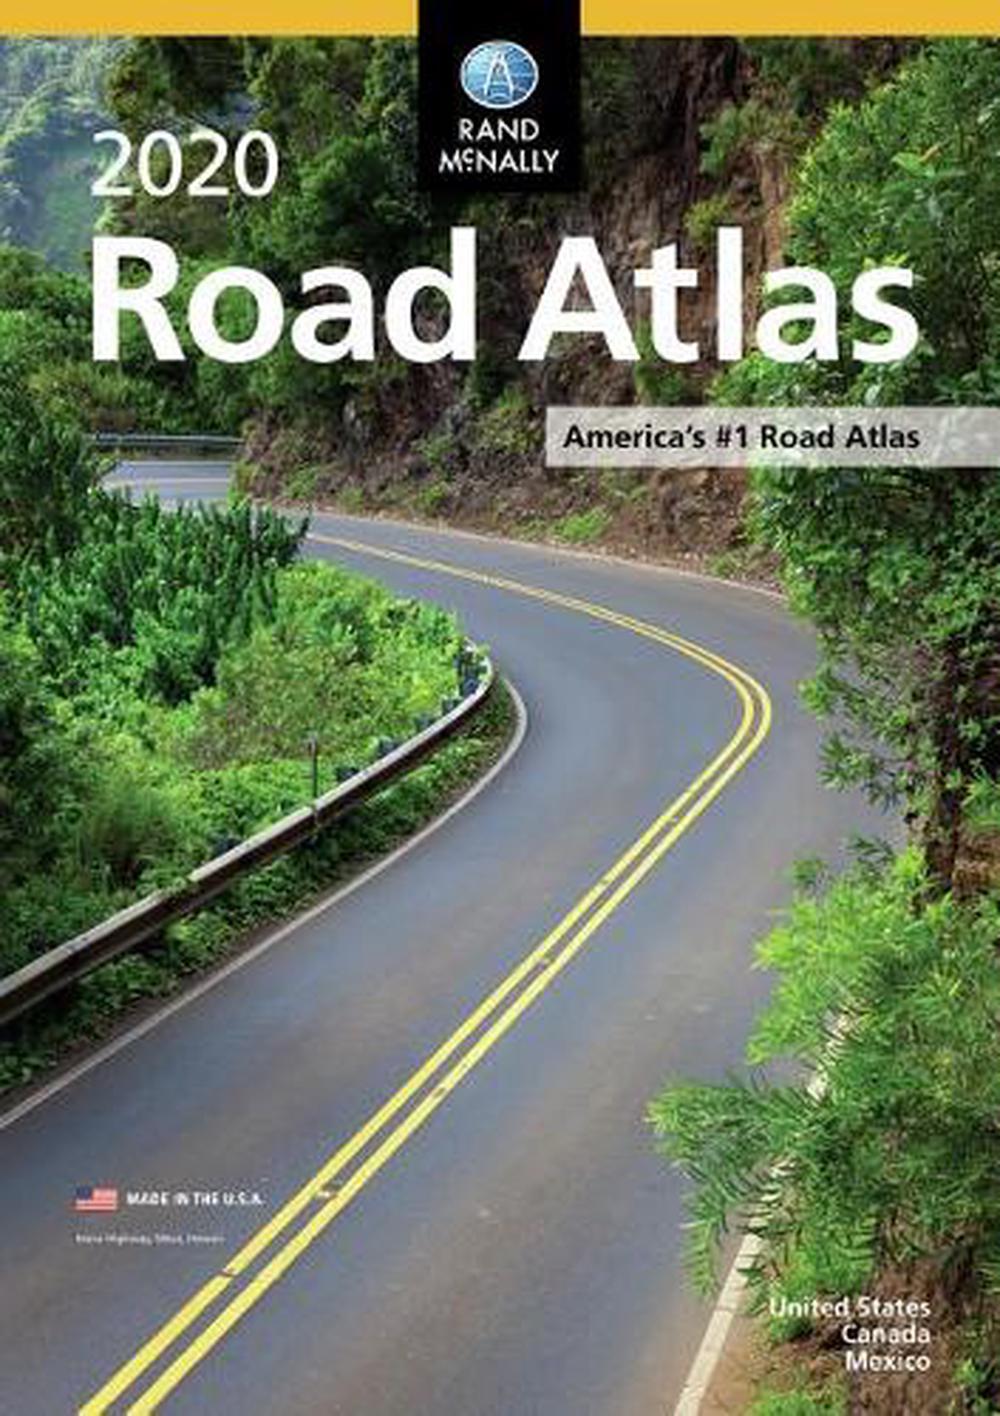 Rand McNally 2020 Road Atlas by Rand McNally (English) Paperback Book